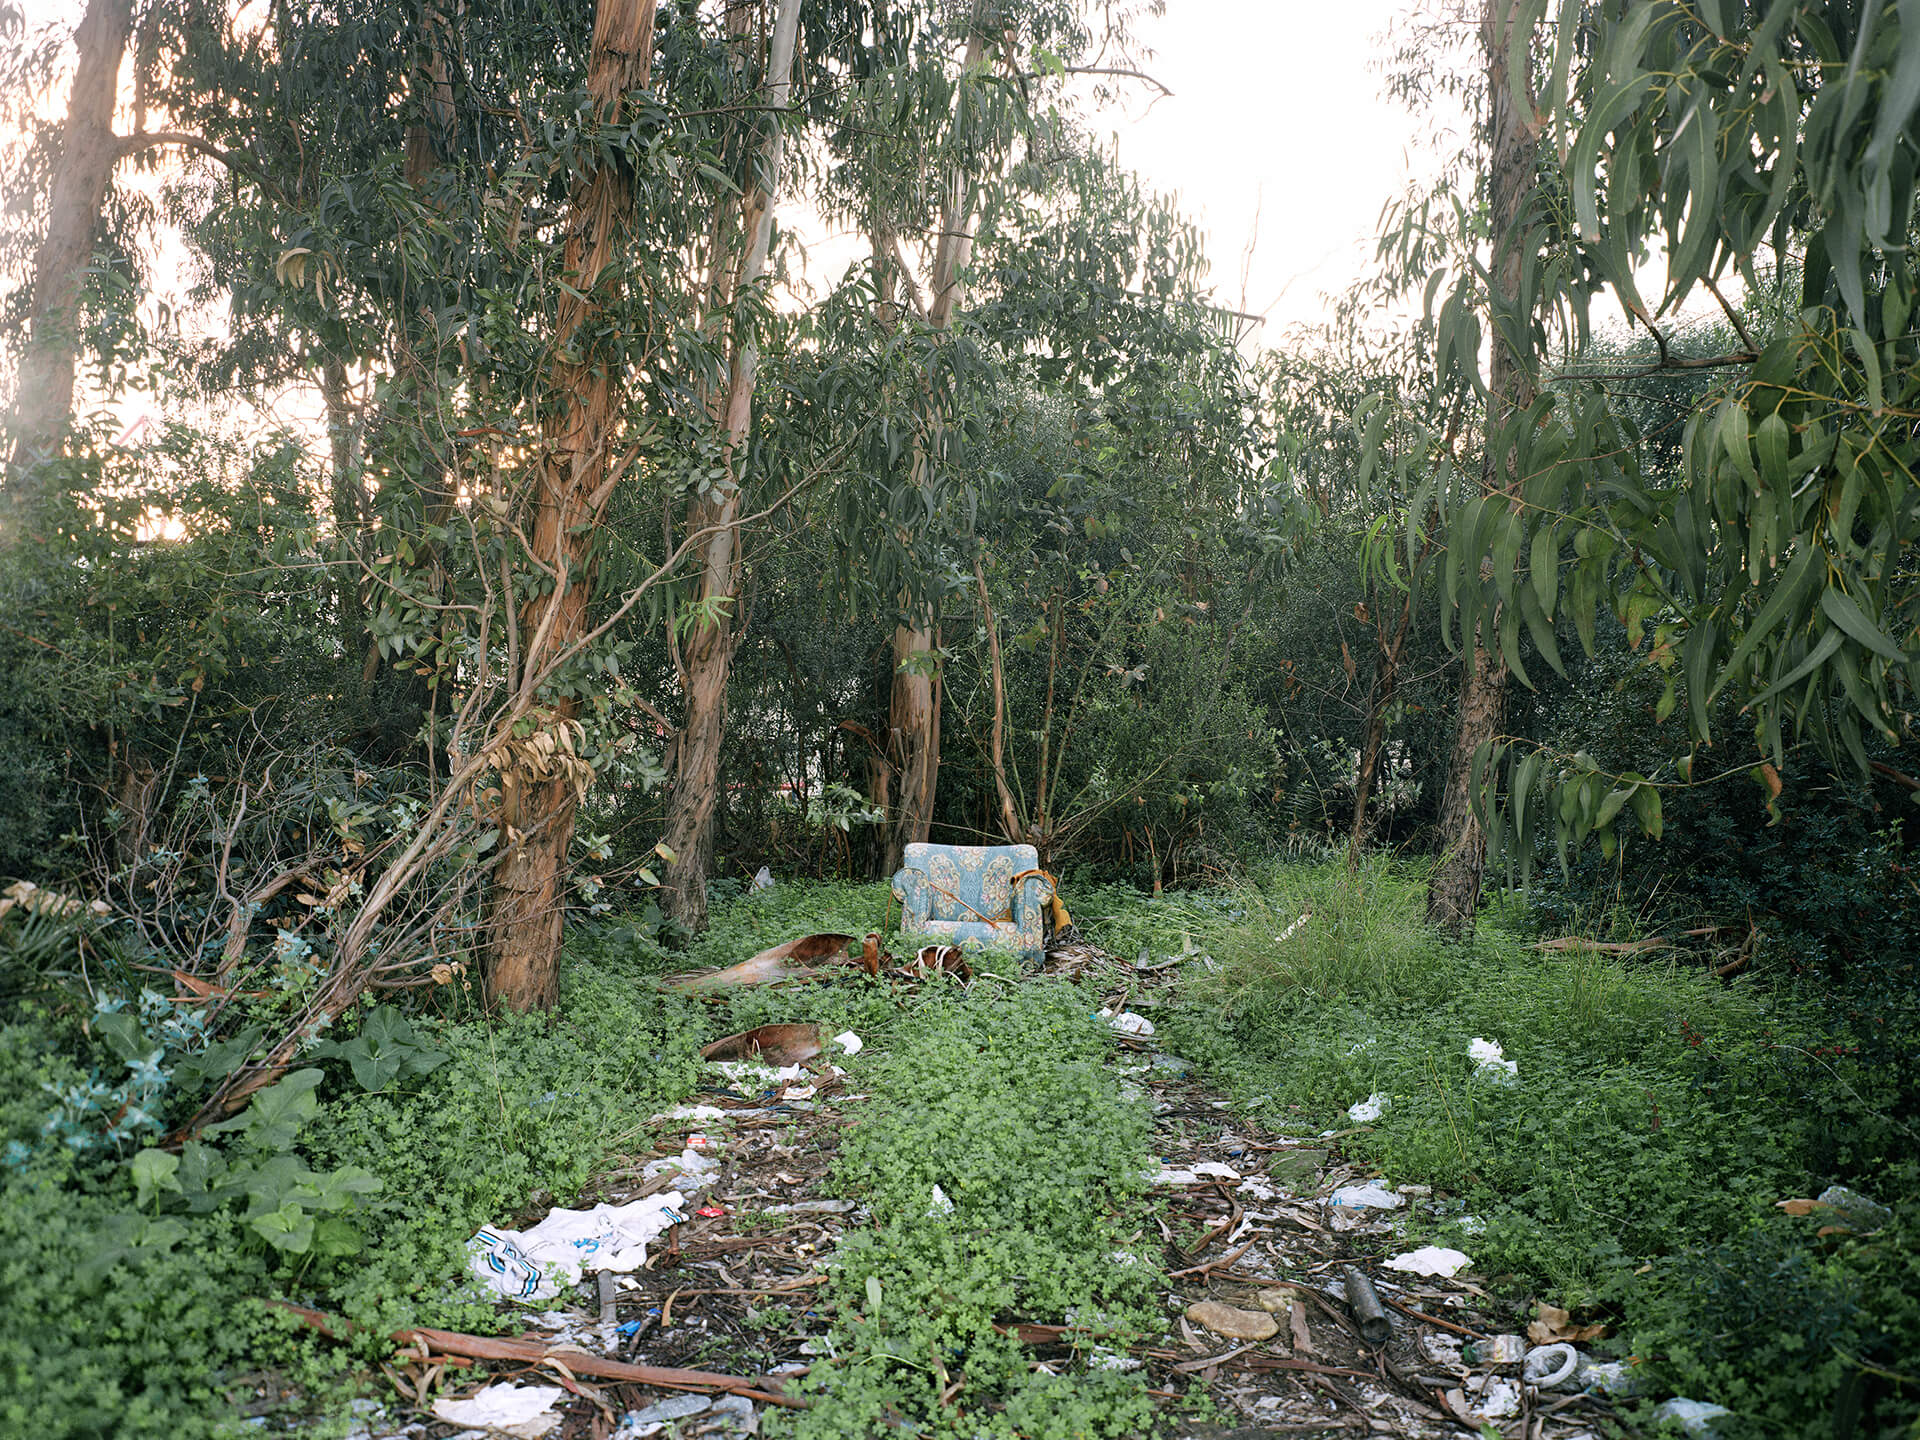 Fauteuil abandonné sur la rive du Río Guadarranque à Los Barrios, communauté autonome d'Andalousie.